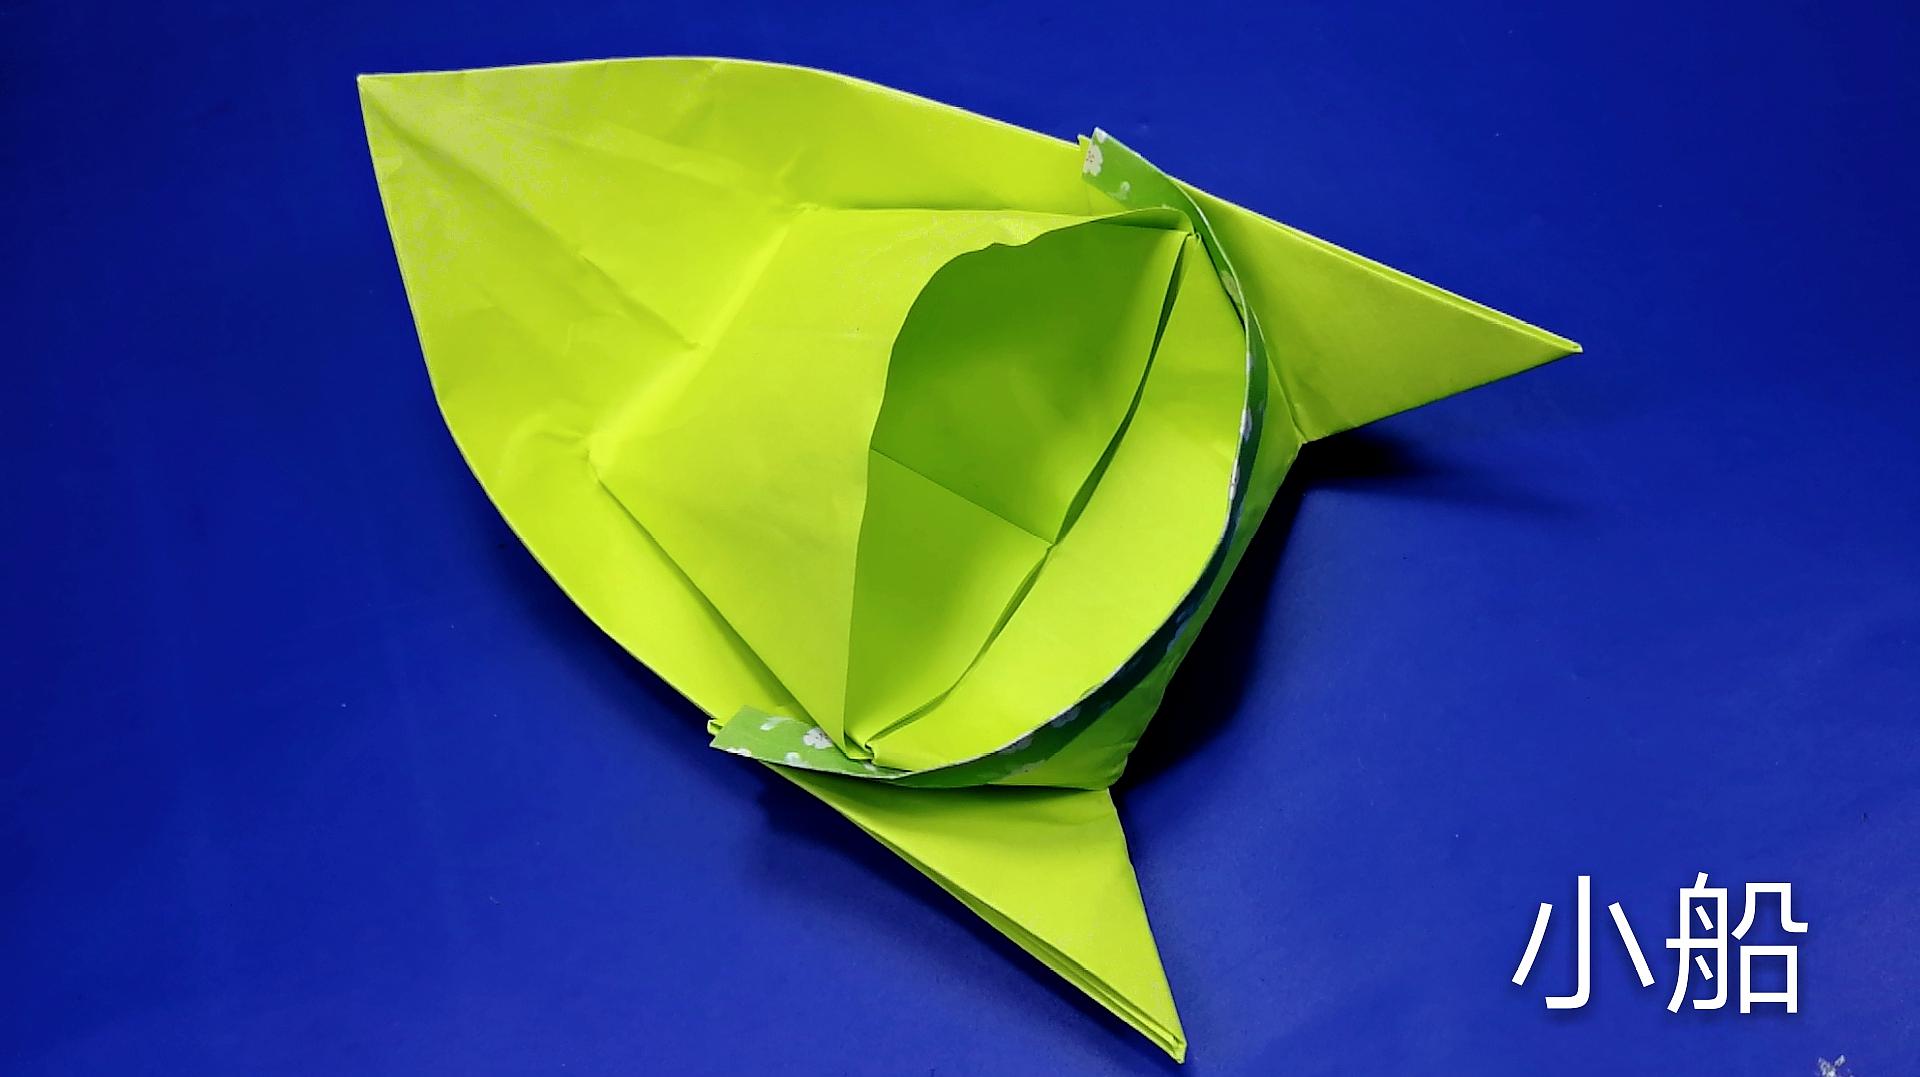 03:38 来源-3分钟学会乌篷船的折法 简单的小船折纸 diy手工制作